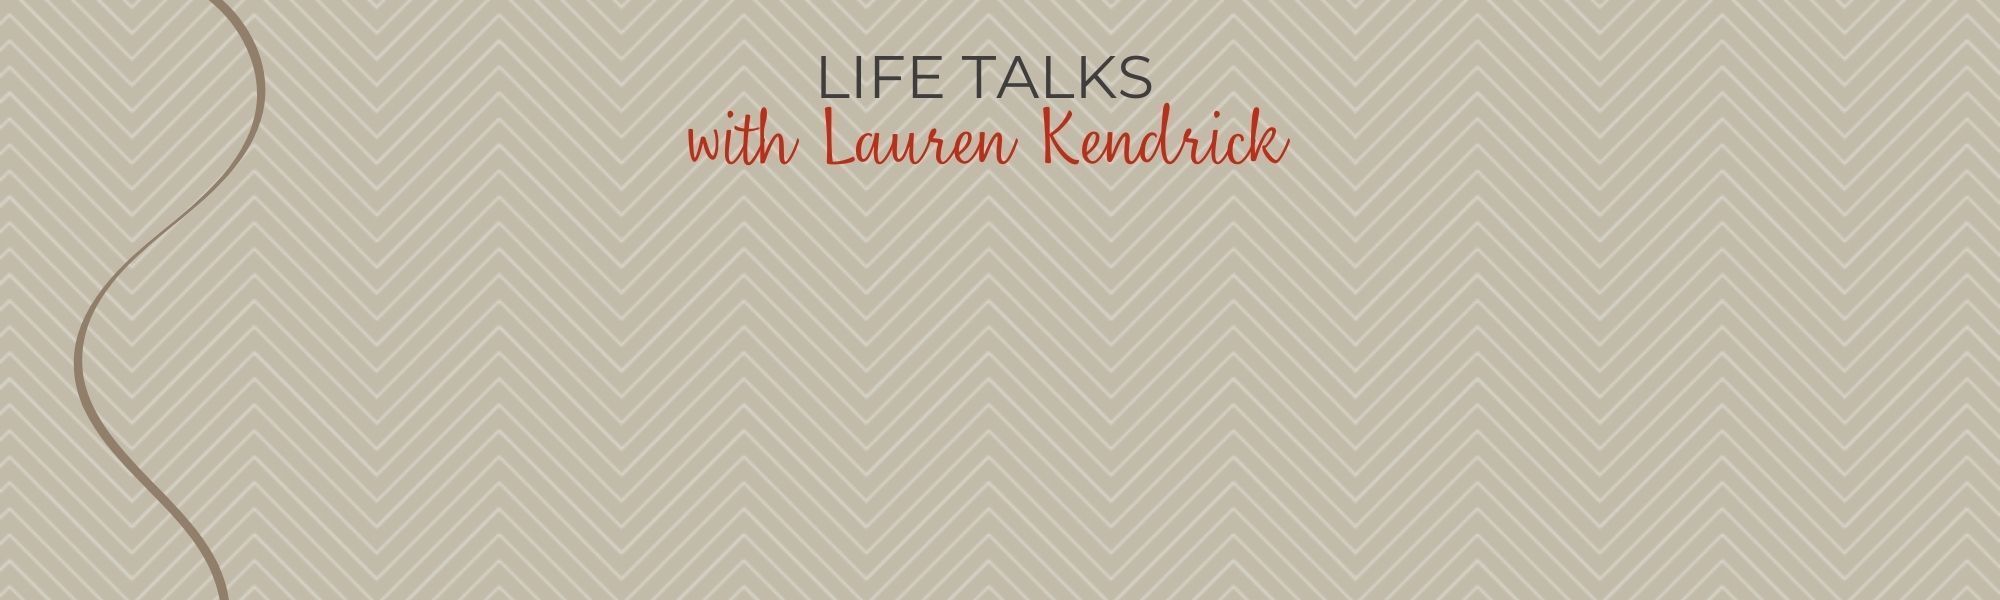 Life Talks with Lauren